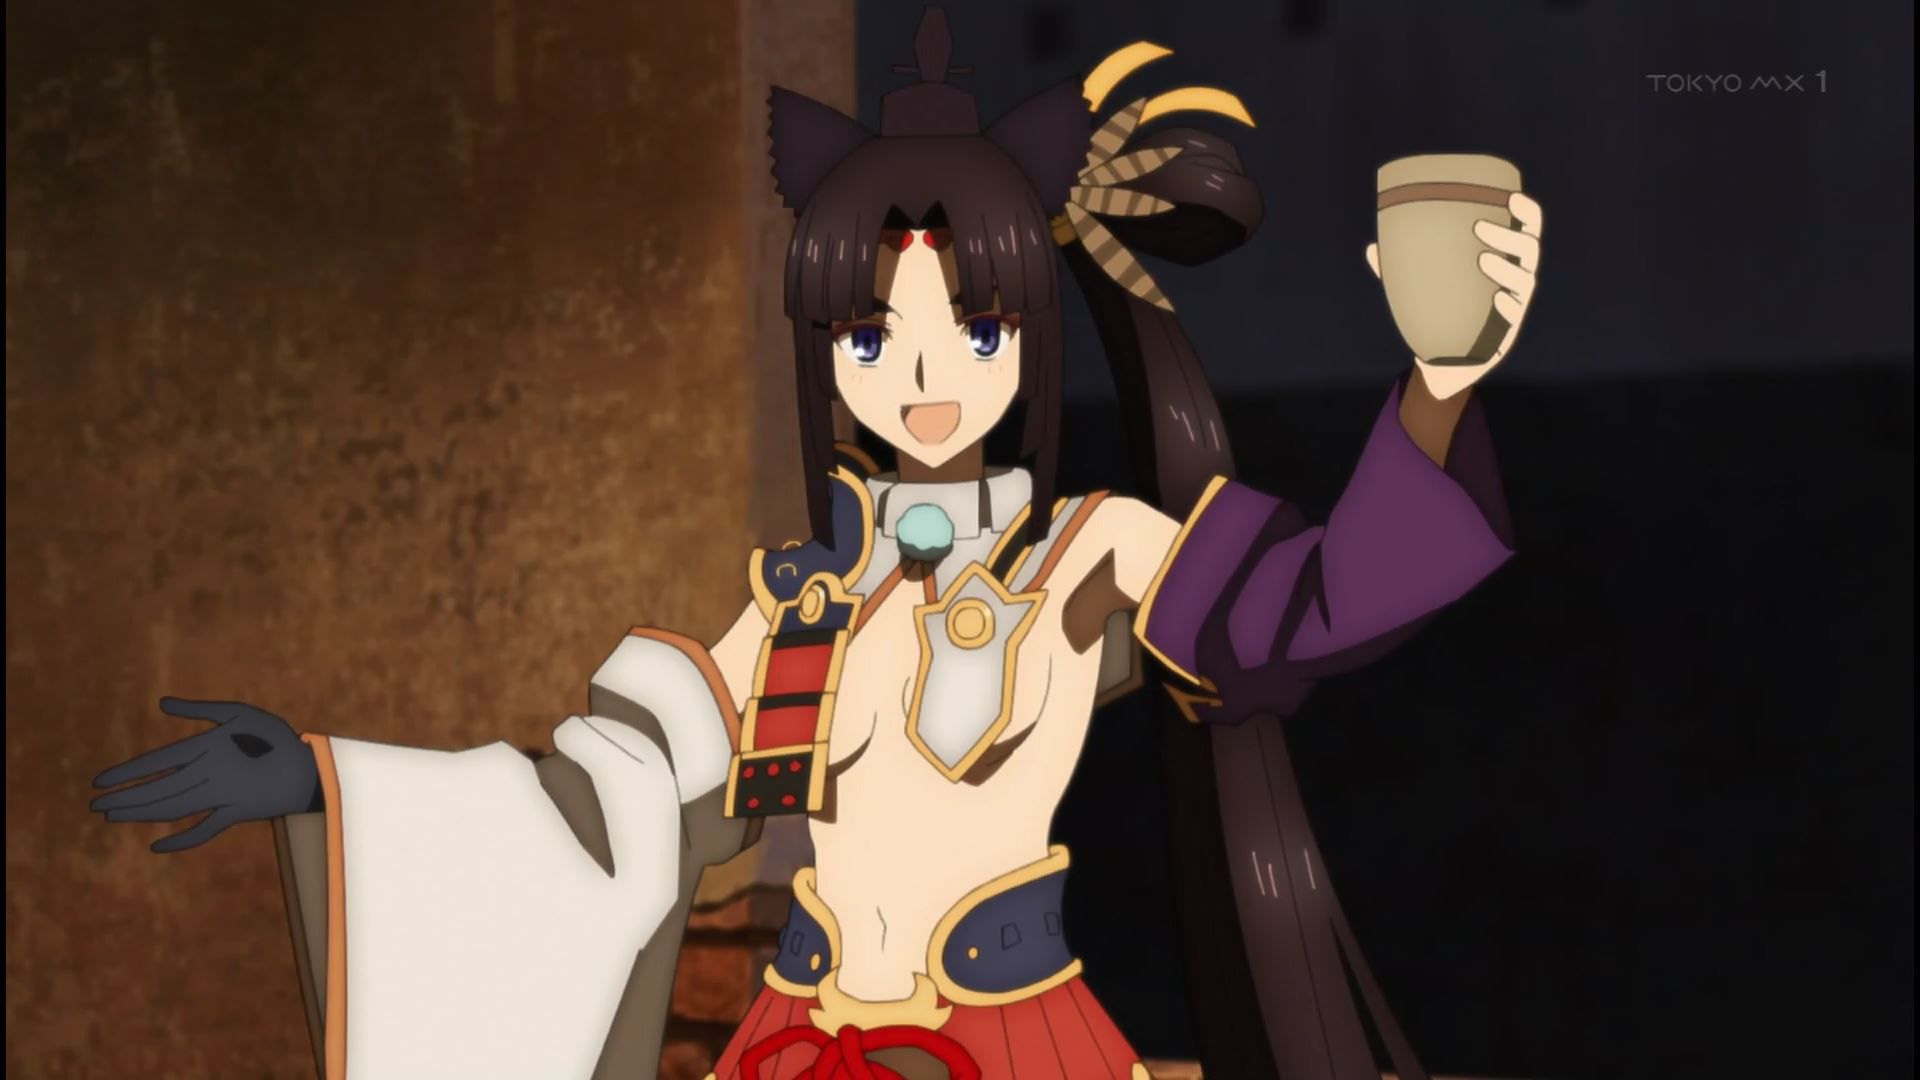 Anime [Fate / Grand Order Babylonia] 3 episodes mash erotic and ushiwakamaru tits! 13